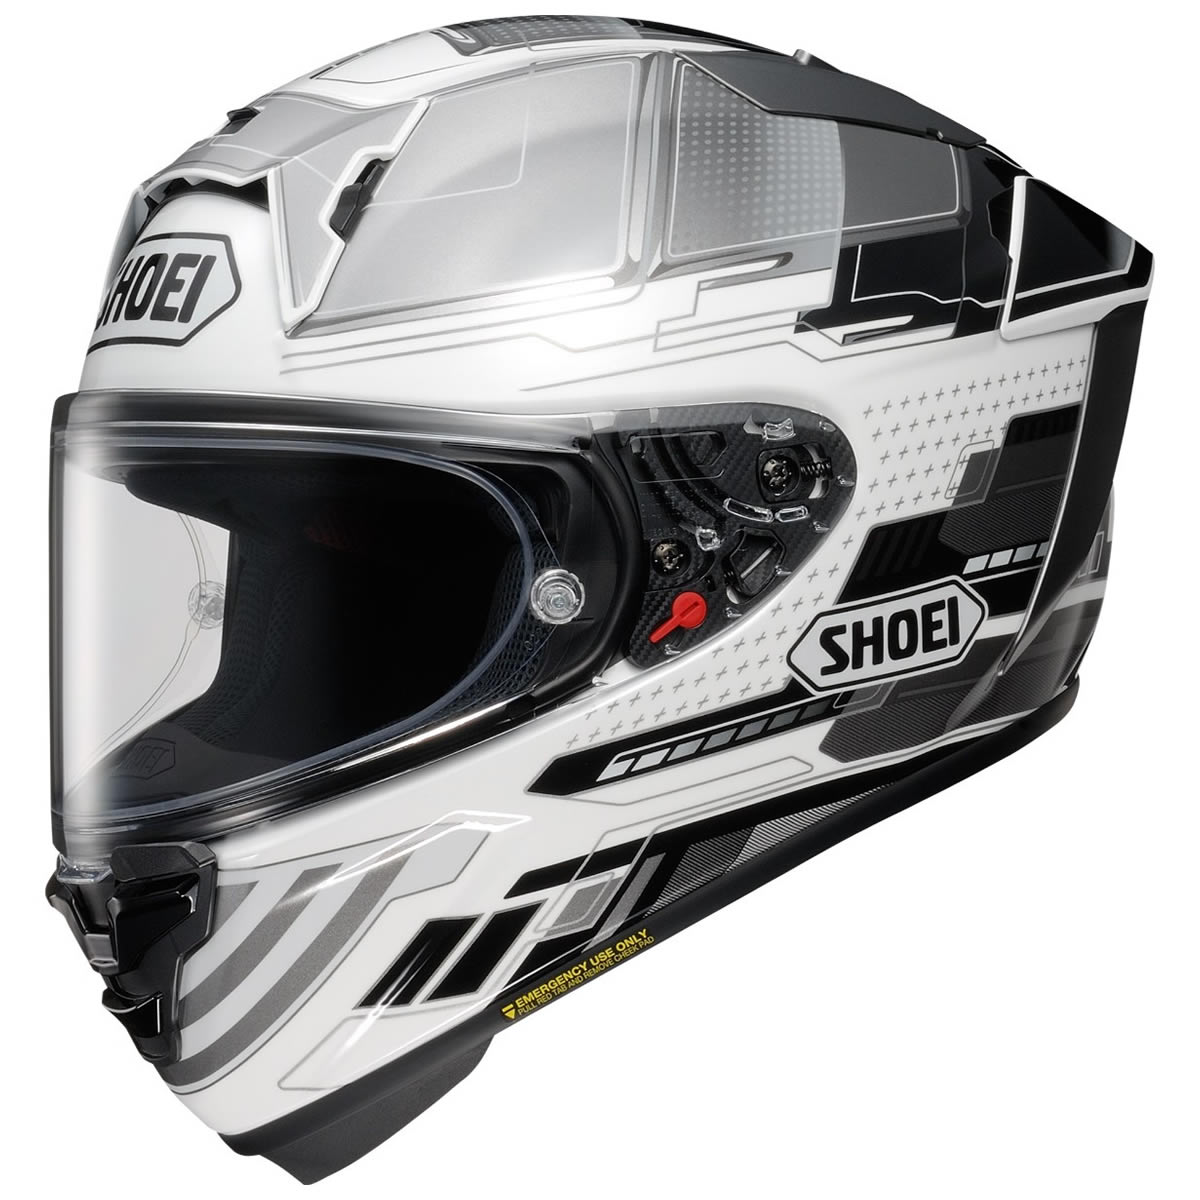 Shoei Helm X-SPR Pro Proxy, weiß-grau-schwarz